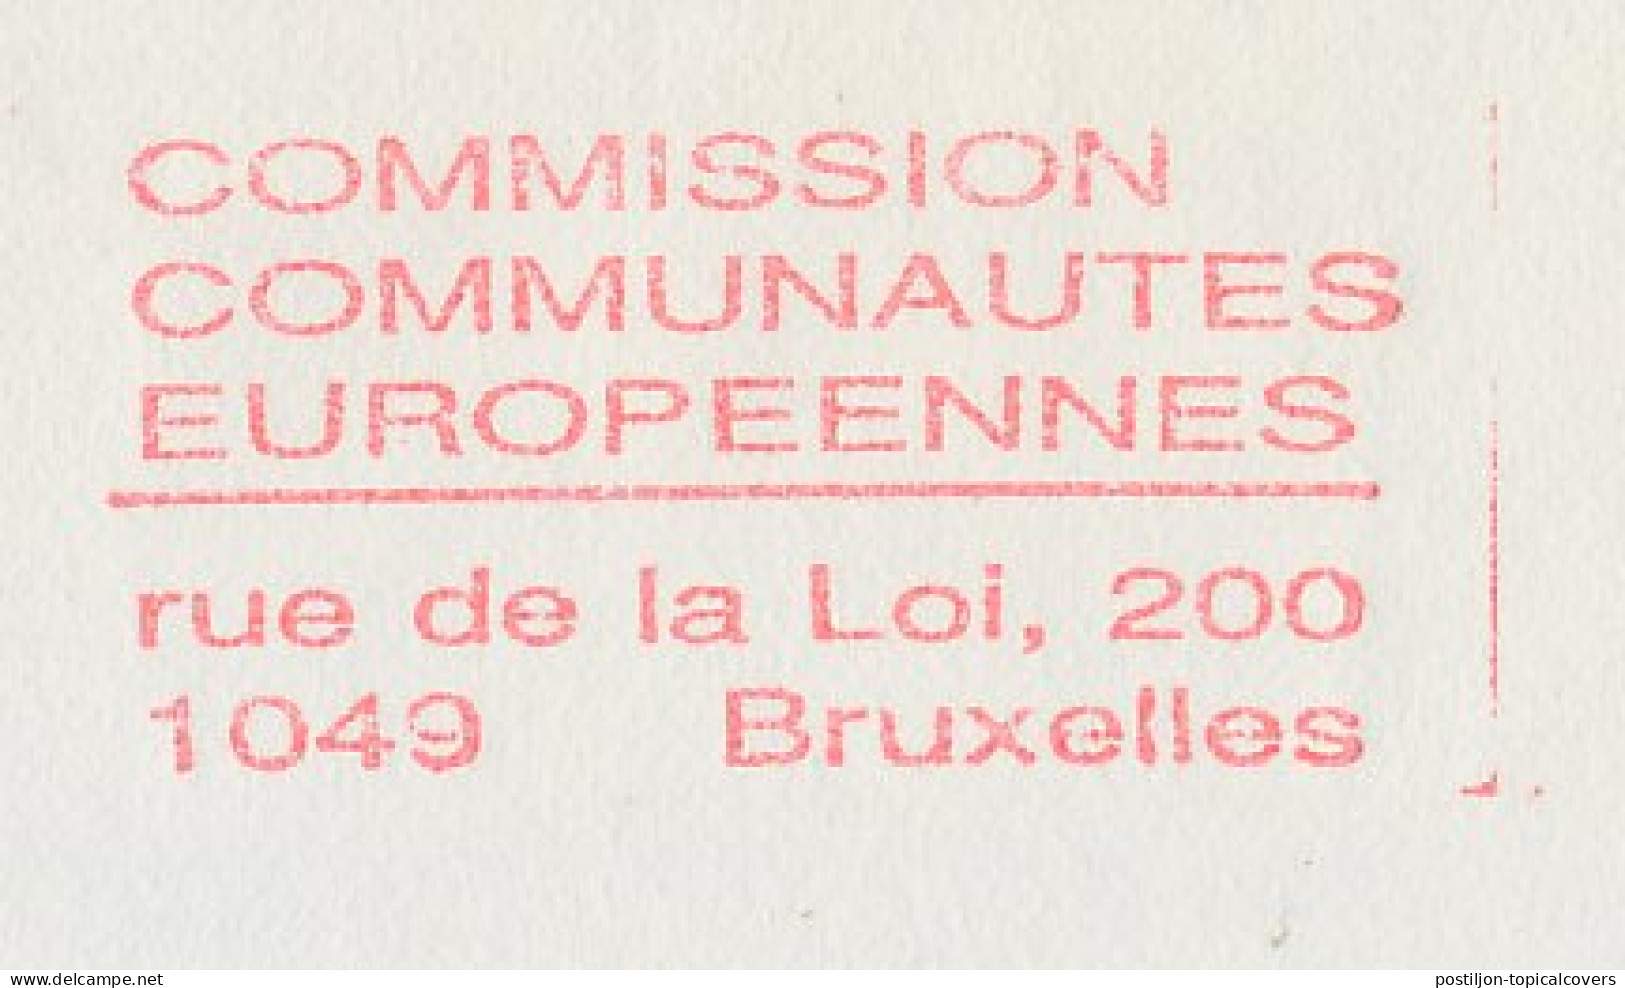 Meter Top Cut Belgium 1994 European Communities Commission - Institutions Européennes